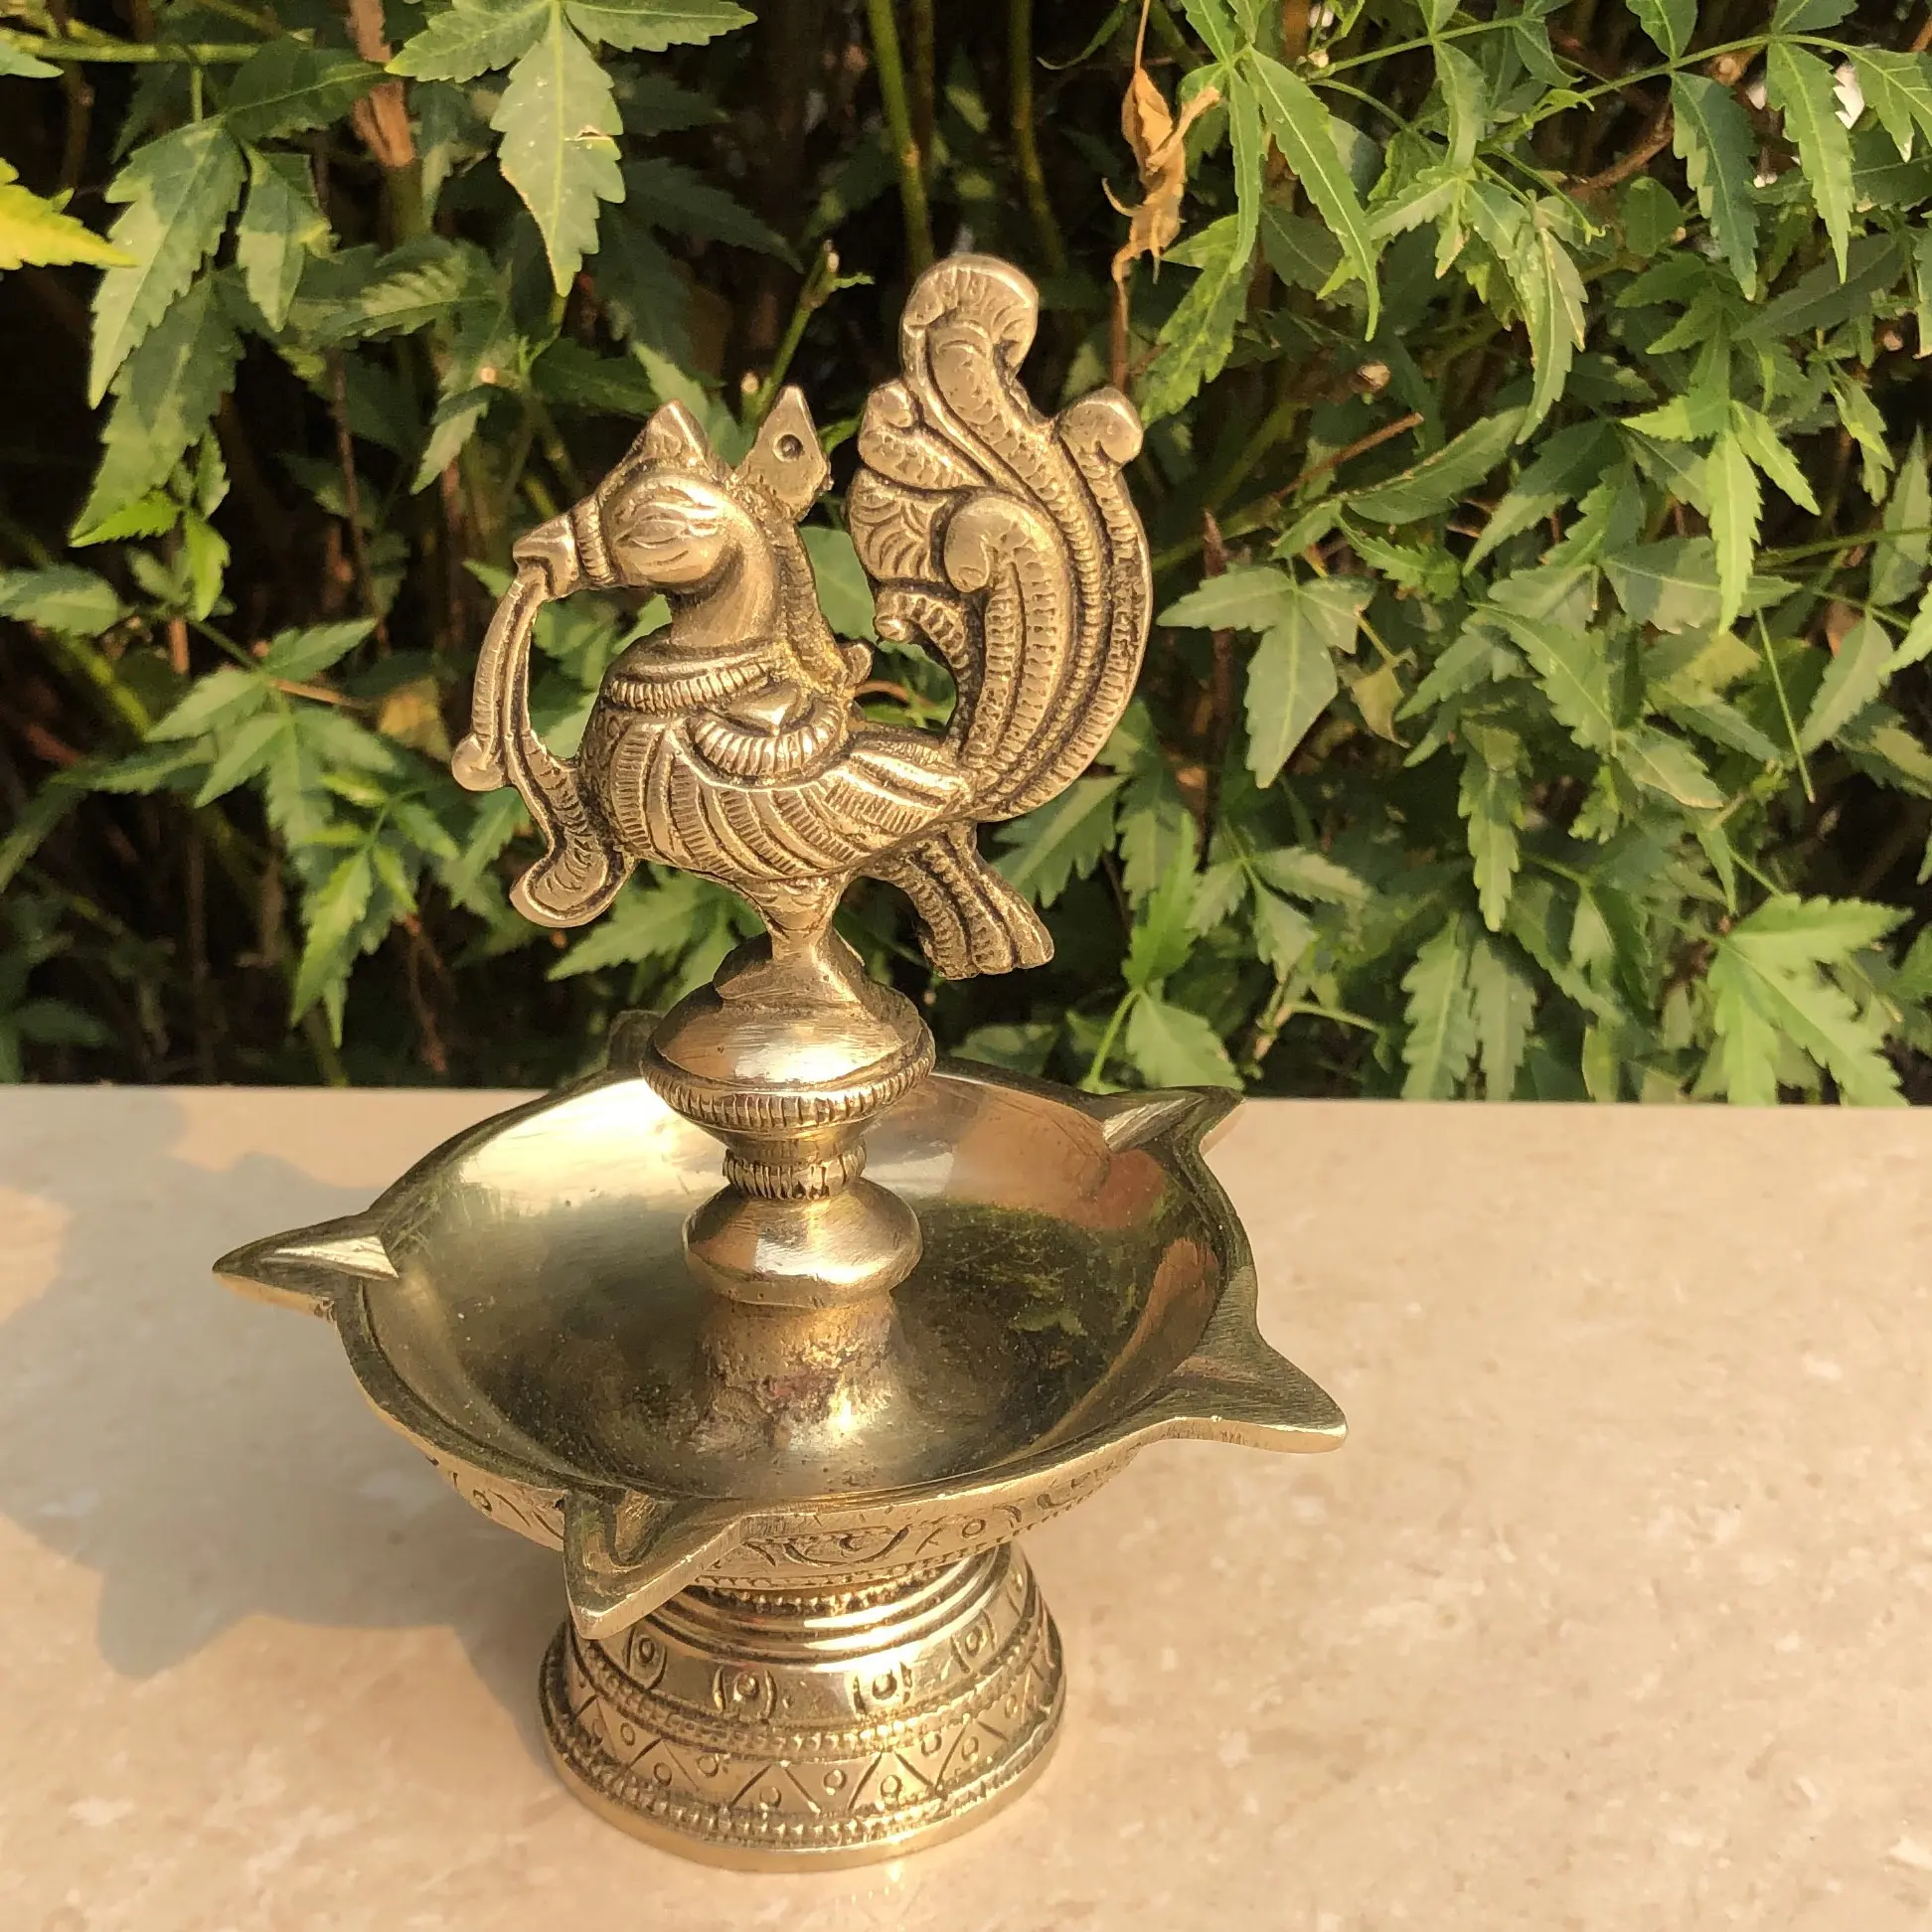 โคมไฟน้ำมันอินเดียนกทำในโลหะทองเหลือง Diya สำหรับตกแต่งเทศกาล Diwali ในโบราณเสร็จแล้ว